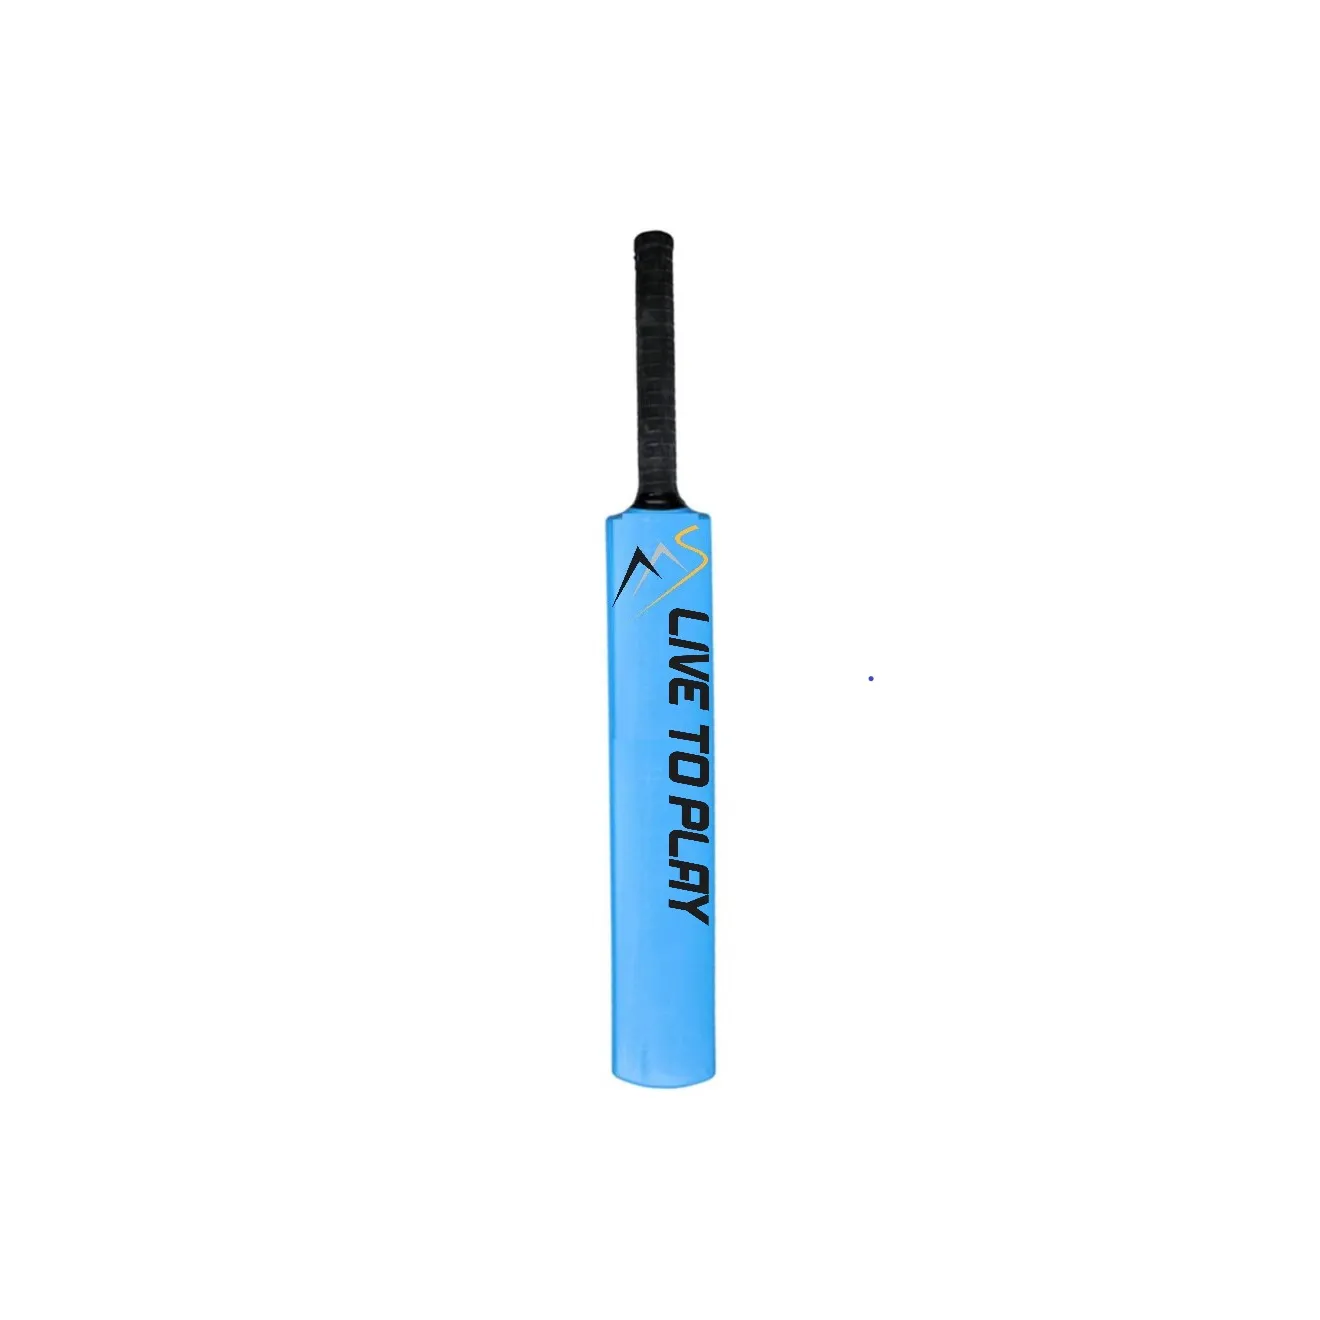 Aas bastão de plástico para cricket, pesado, para área interna e externa, bem com bolas de vento, bola de tênis e bolas de plástico